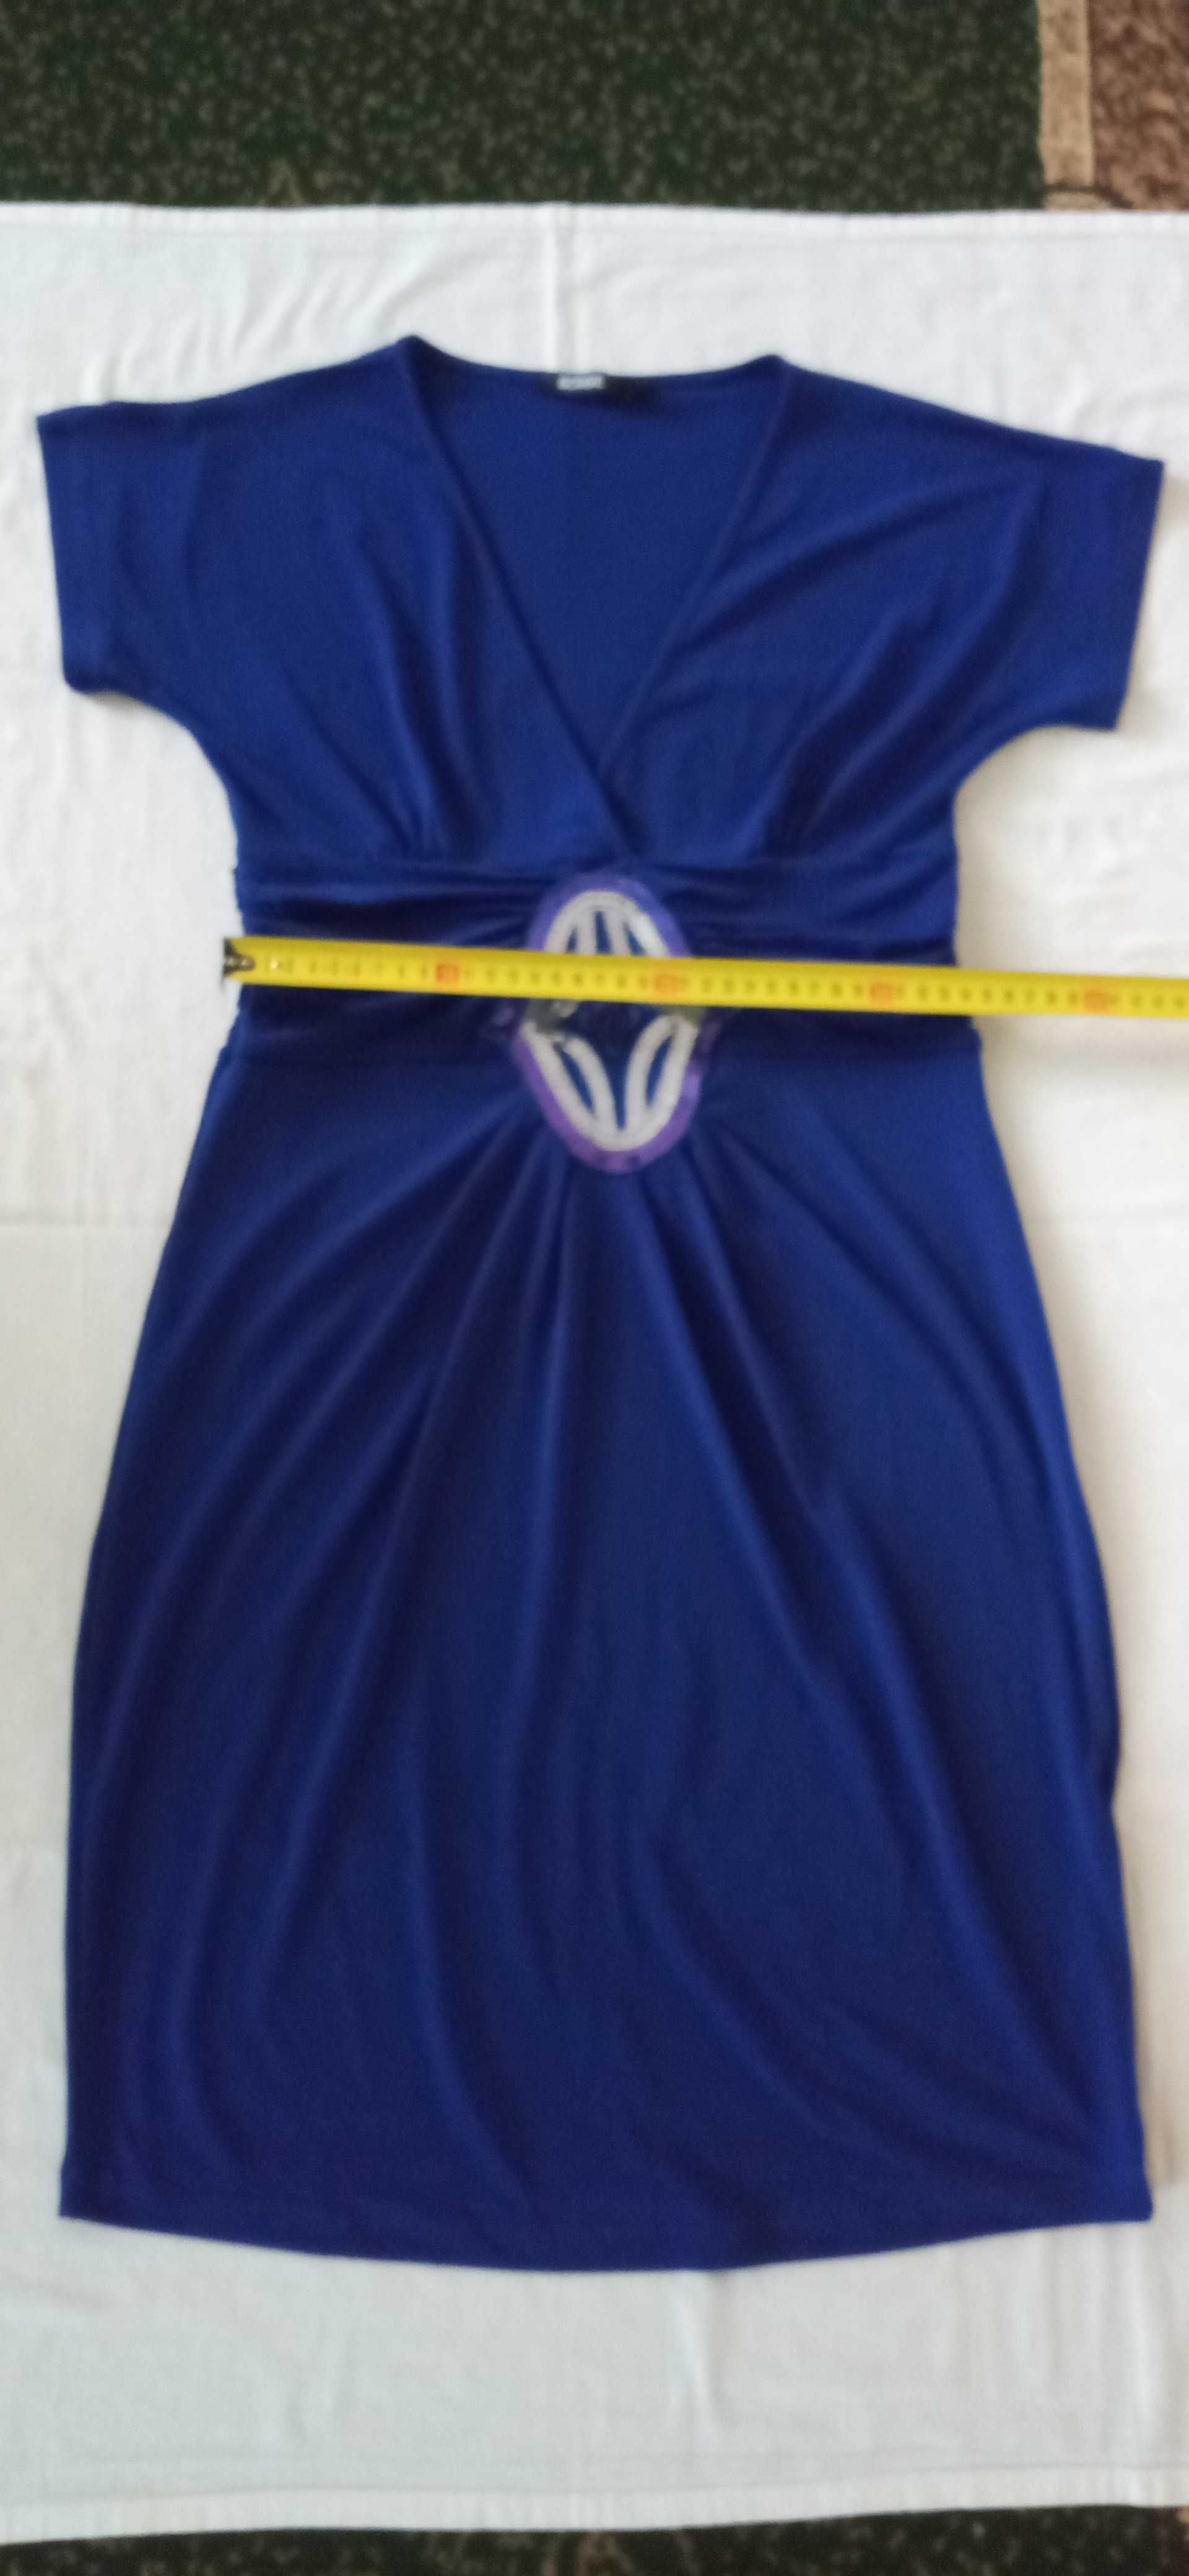 Плаття темно-синє з фіолетовим відтінком на короткий рукав.